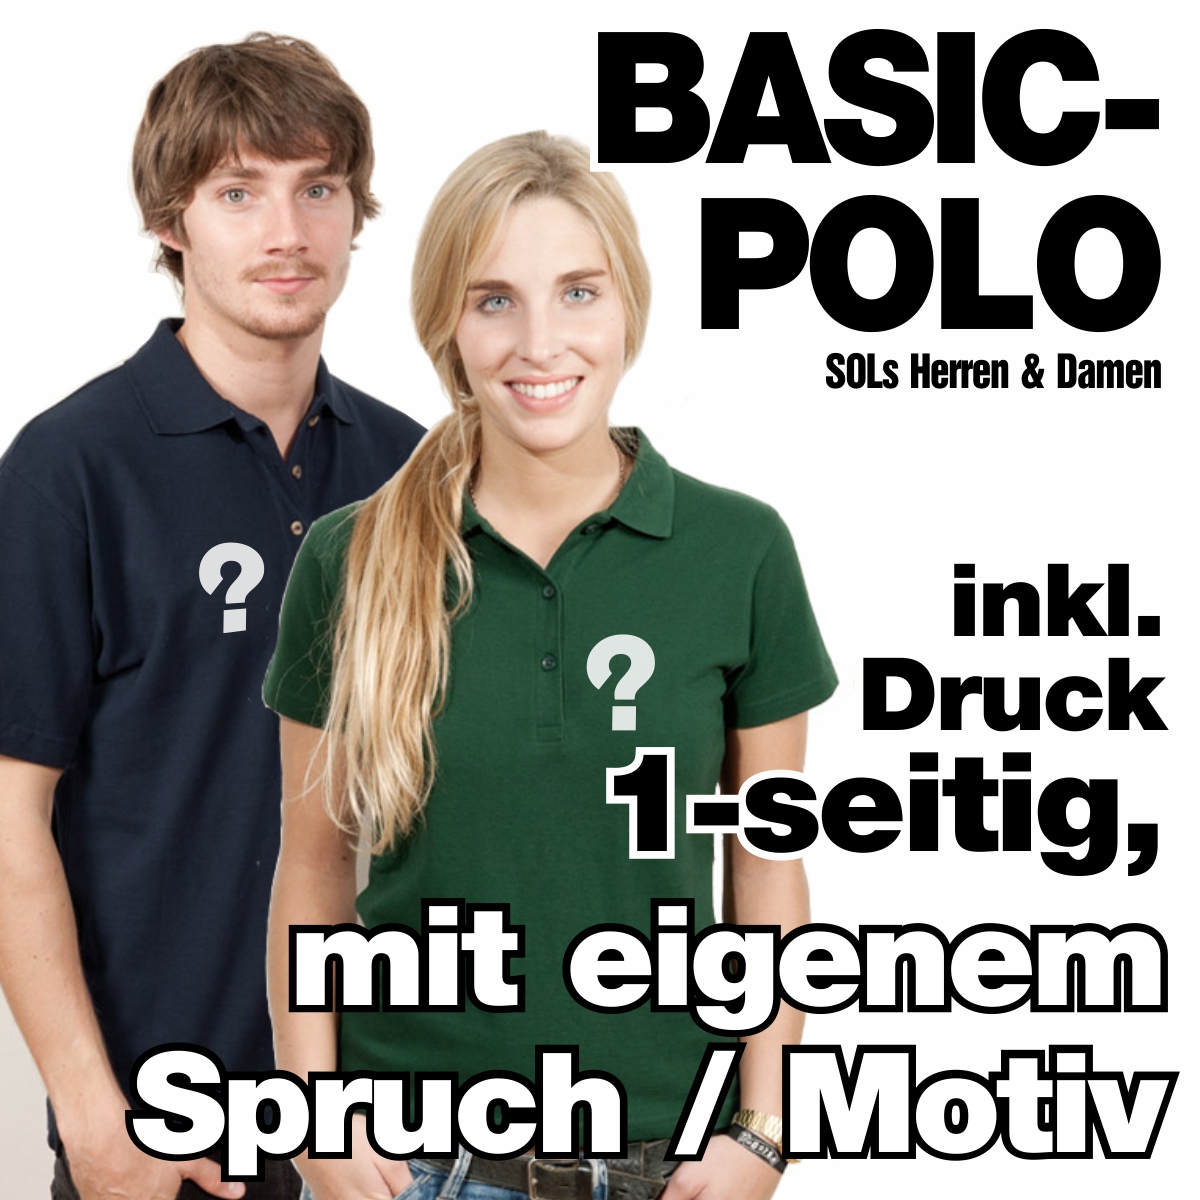 Herren oder Damen Polo-Shirt inkl. 1-seitigem Druck nach Wahl